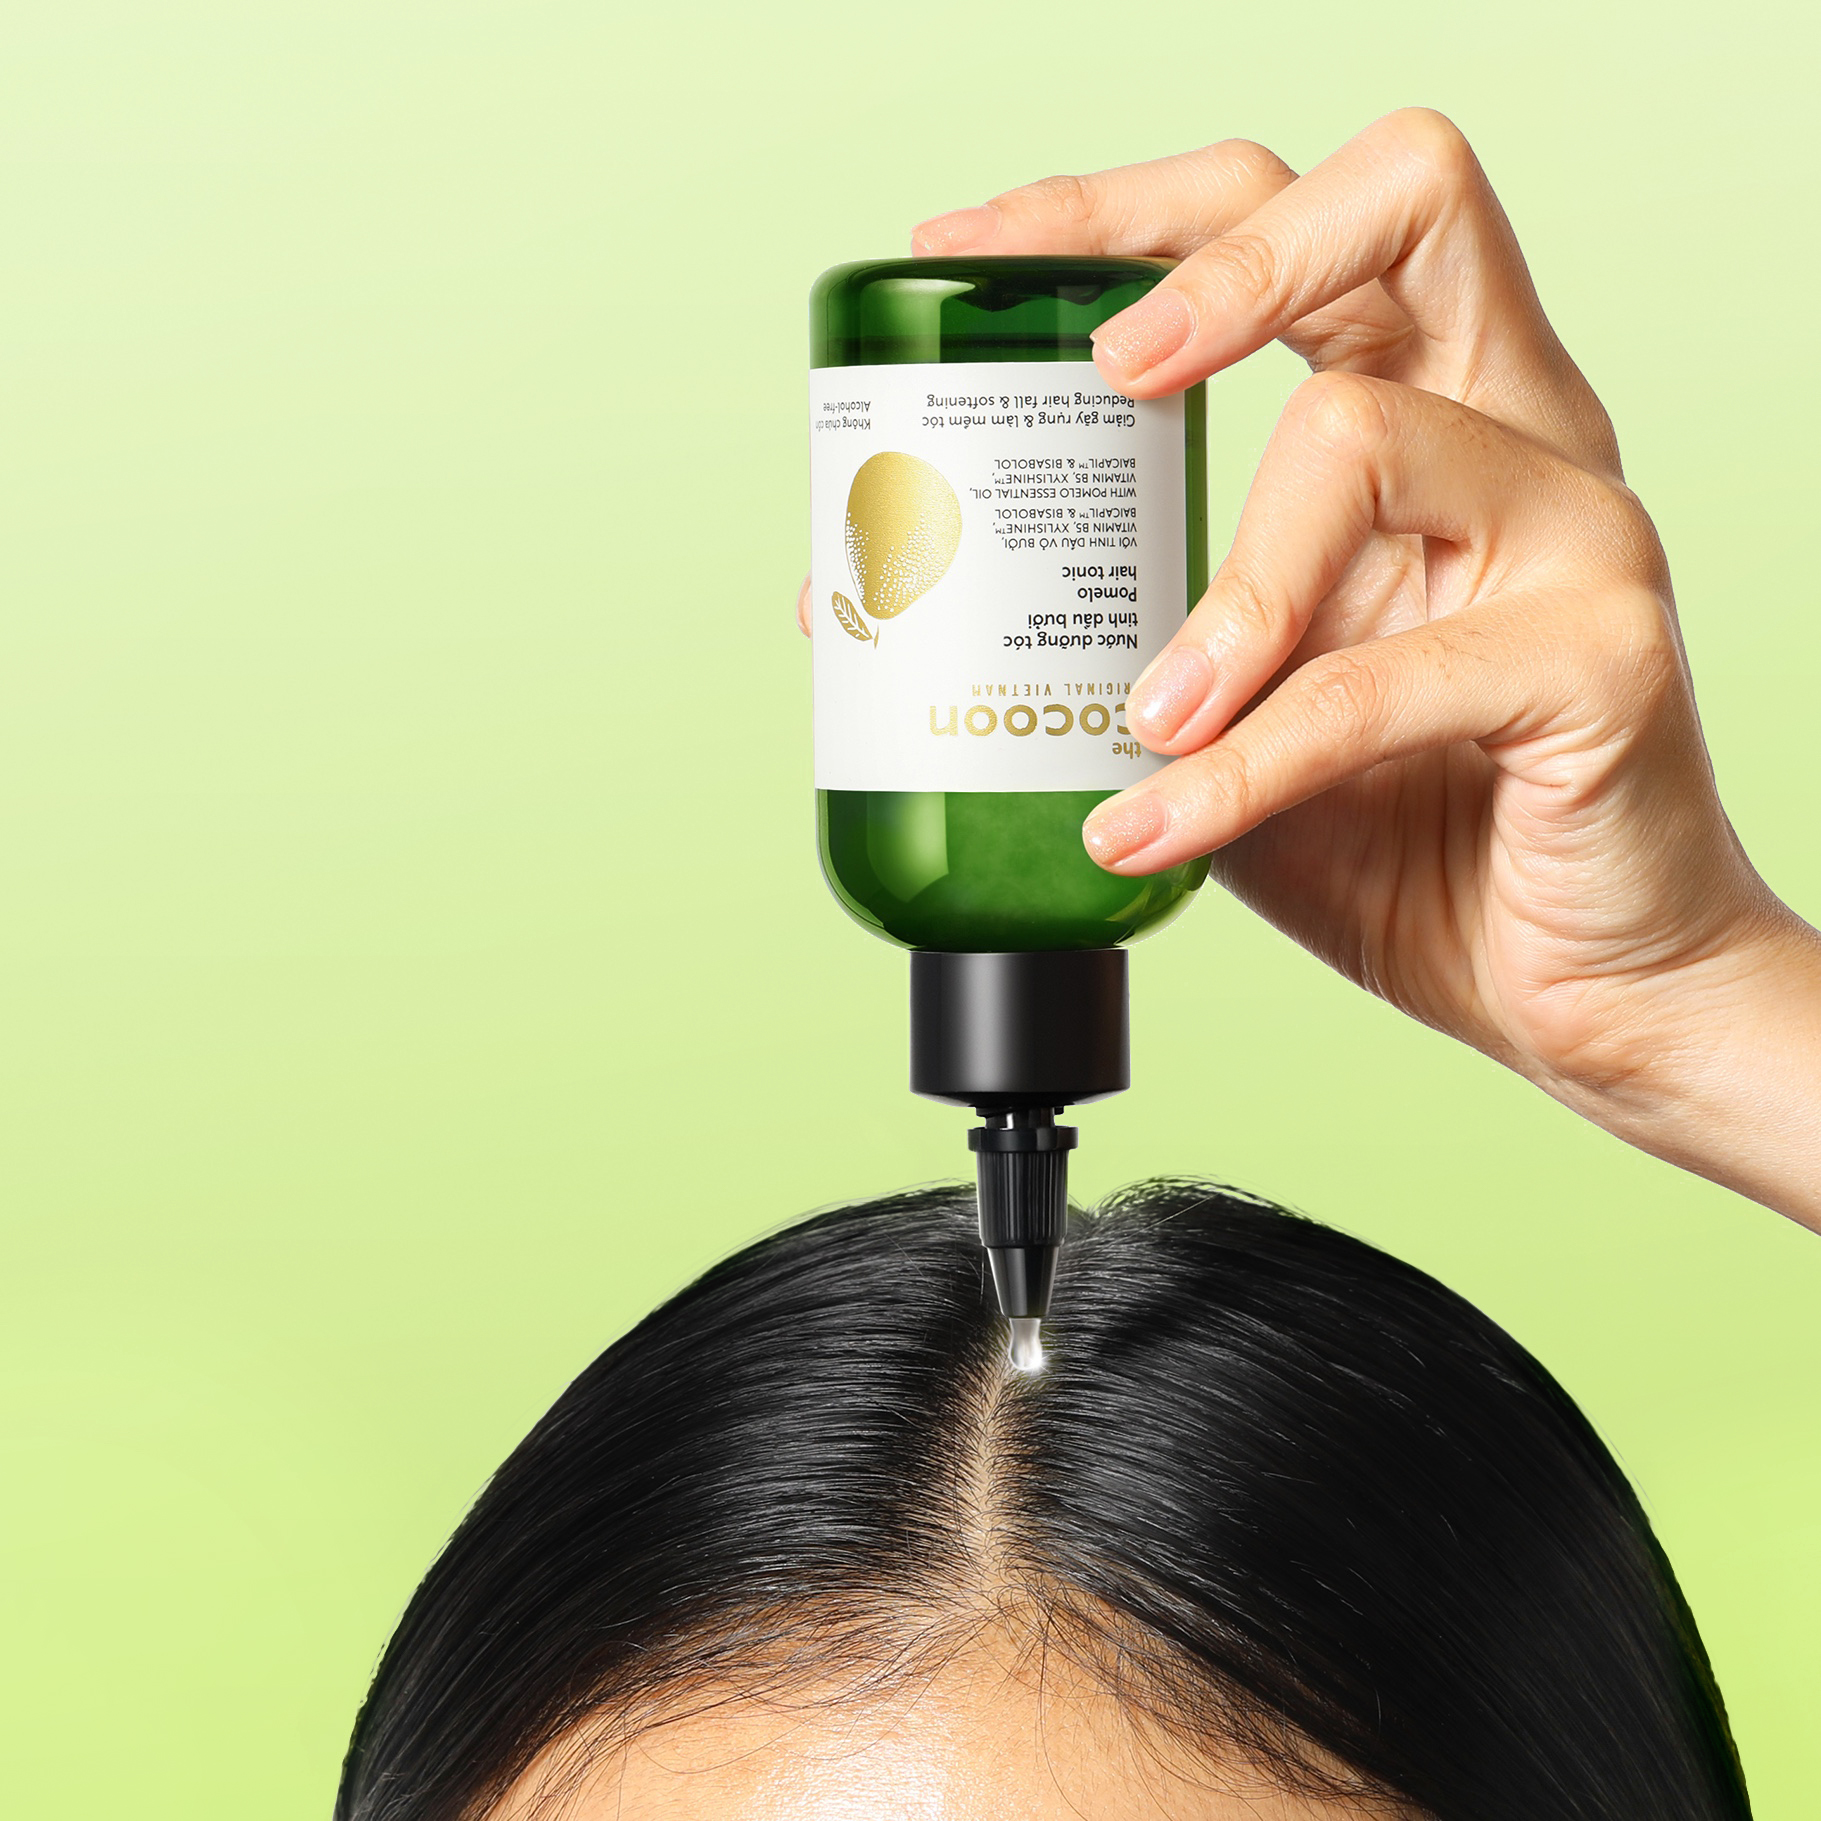 Nước dưỡng tóc tinh dầu bưởi Cocoon Bản Nâng Cấp giúp giảm gãy rụng hỗ trợ tóc 140ml